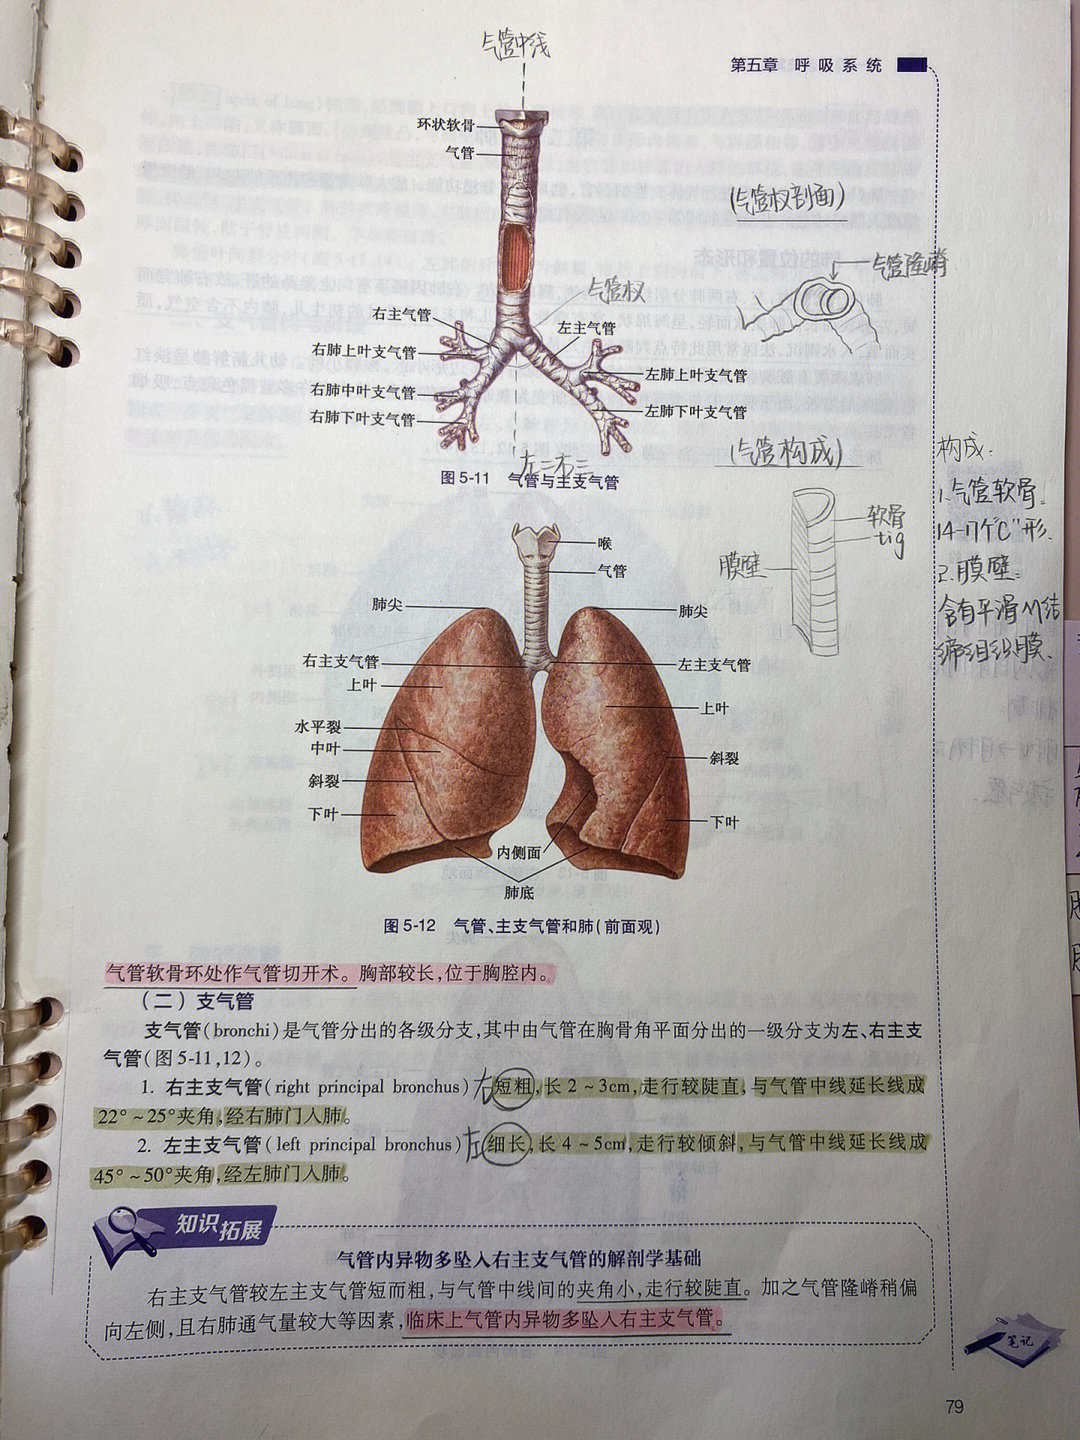 肺的形态左肺狭长右粗短,三缘两面一底尖前下两缘都锐利,只有后缘较钝